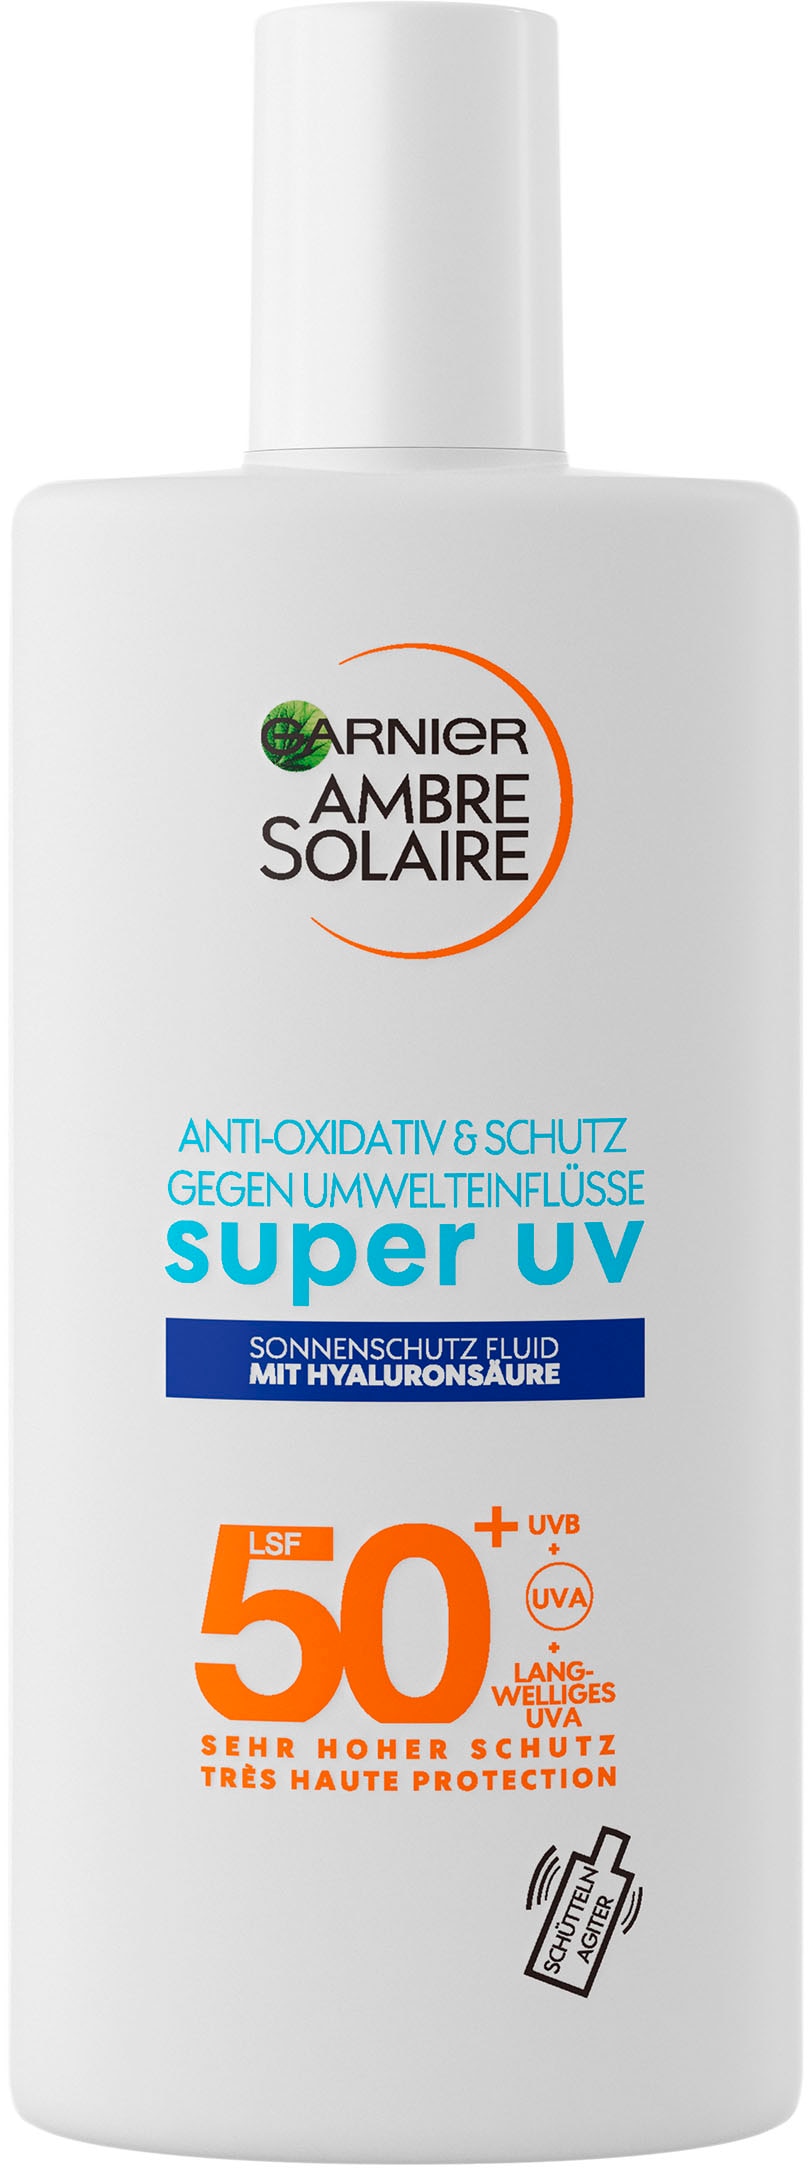 GARNIER Sonnenschutzfluid Hyaluronsäure Solaire bei »Ambre mit expert+«, Sensitive 50 LSF